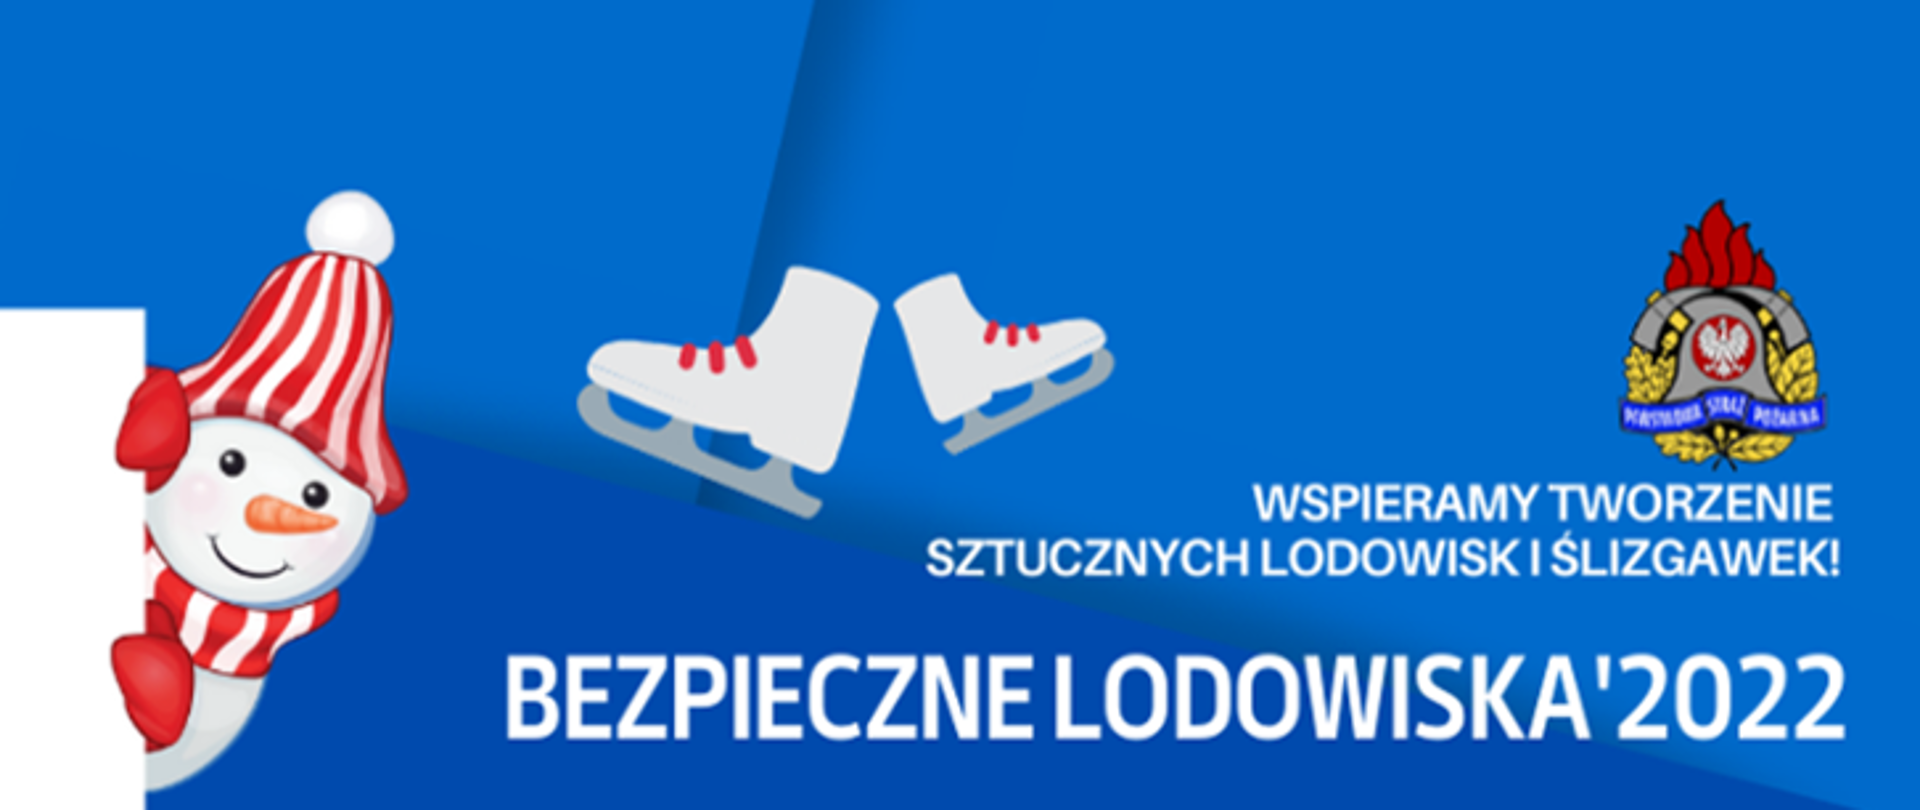 Logo bezpziecznych lodowisk 2022 na niebieskim tle biały napis wspieramy tworzenie sztucznych lodowisk i ślizgawek białe łyżwy biało czerwony bałwan oraz nad napisem logo PSP